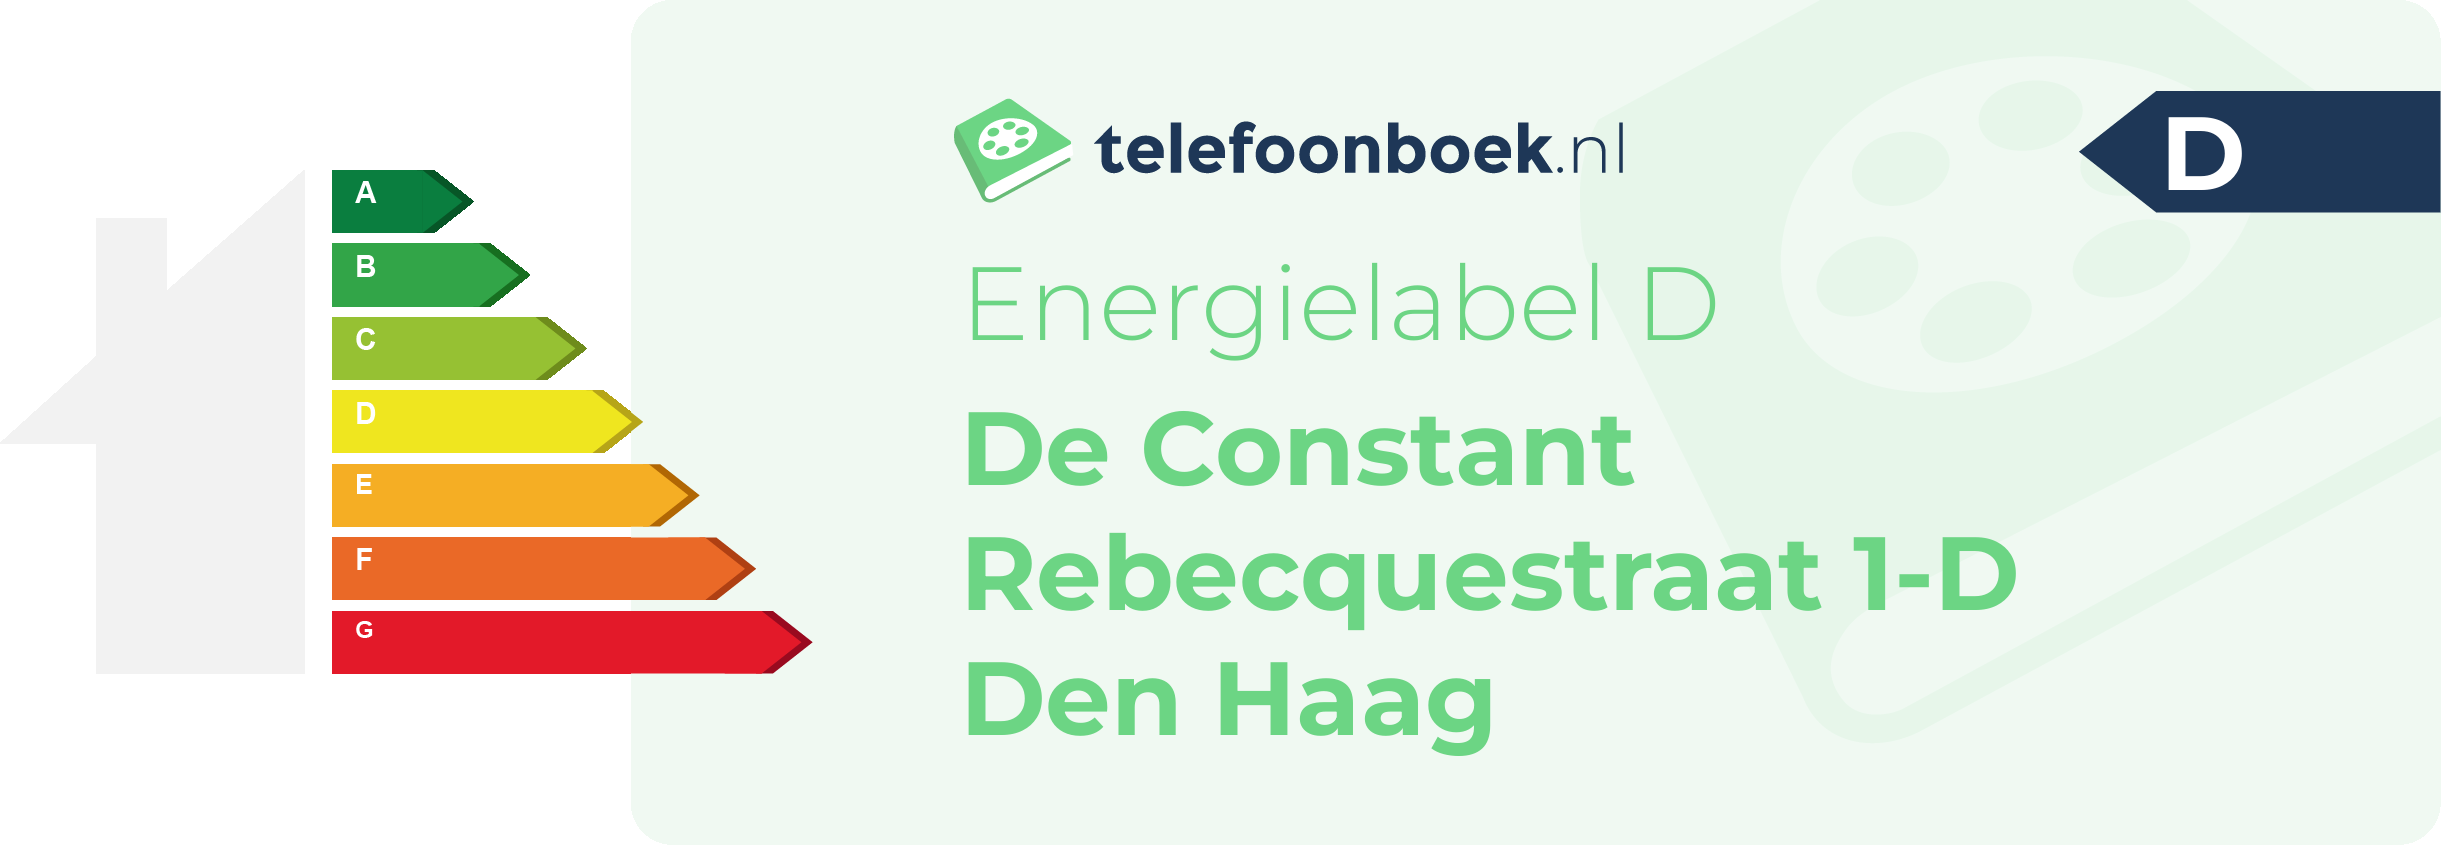 Energielabel De Constant Rebecquestraat 1-D Den Haag